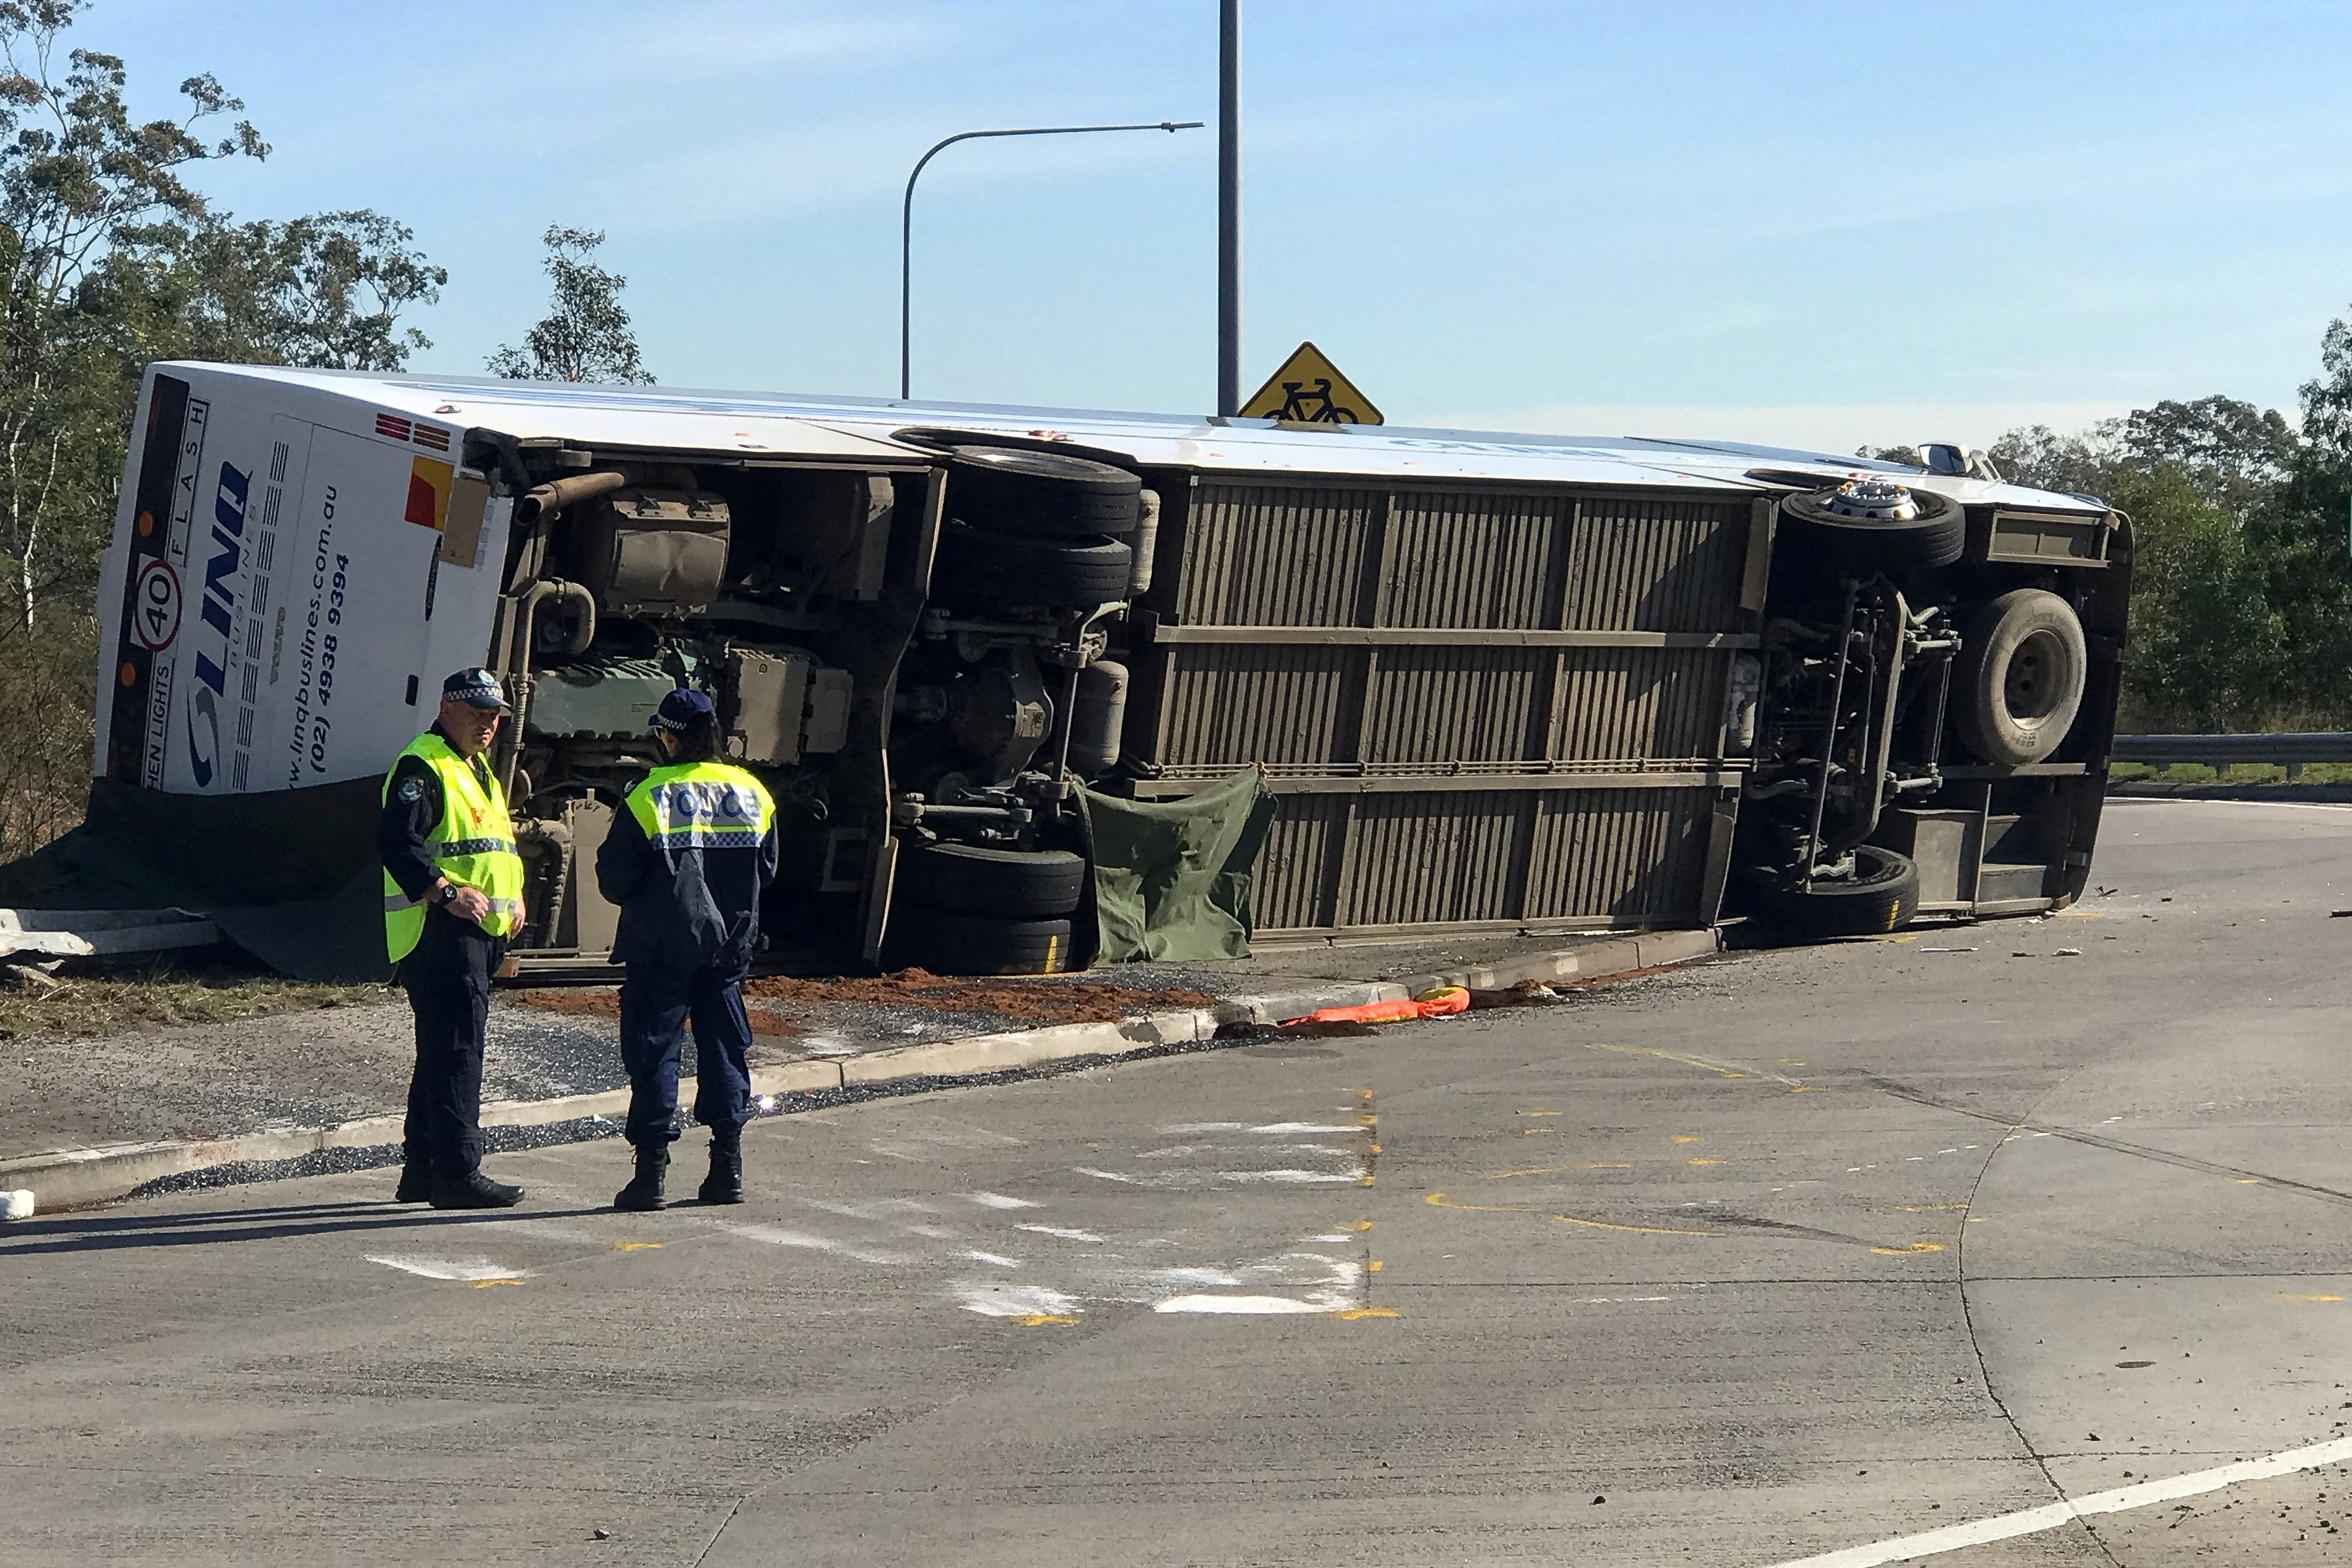 Sürücü, Avustralya’nın on yıllardır yaşadığı en kötü otobüs kazasının ardından 10 düğün konuğunu öldürmekle suçlandı.